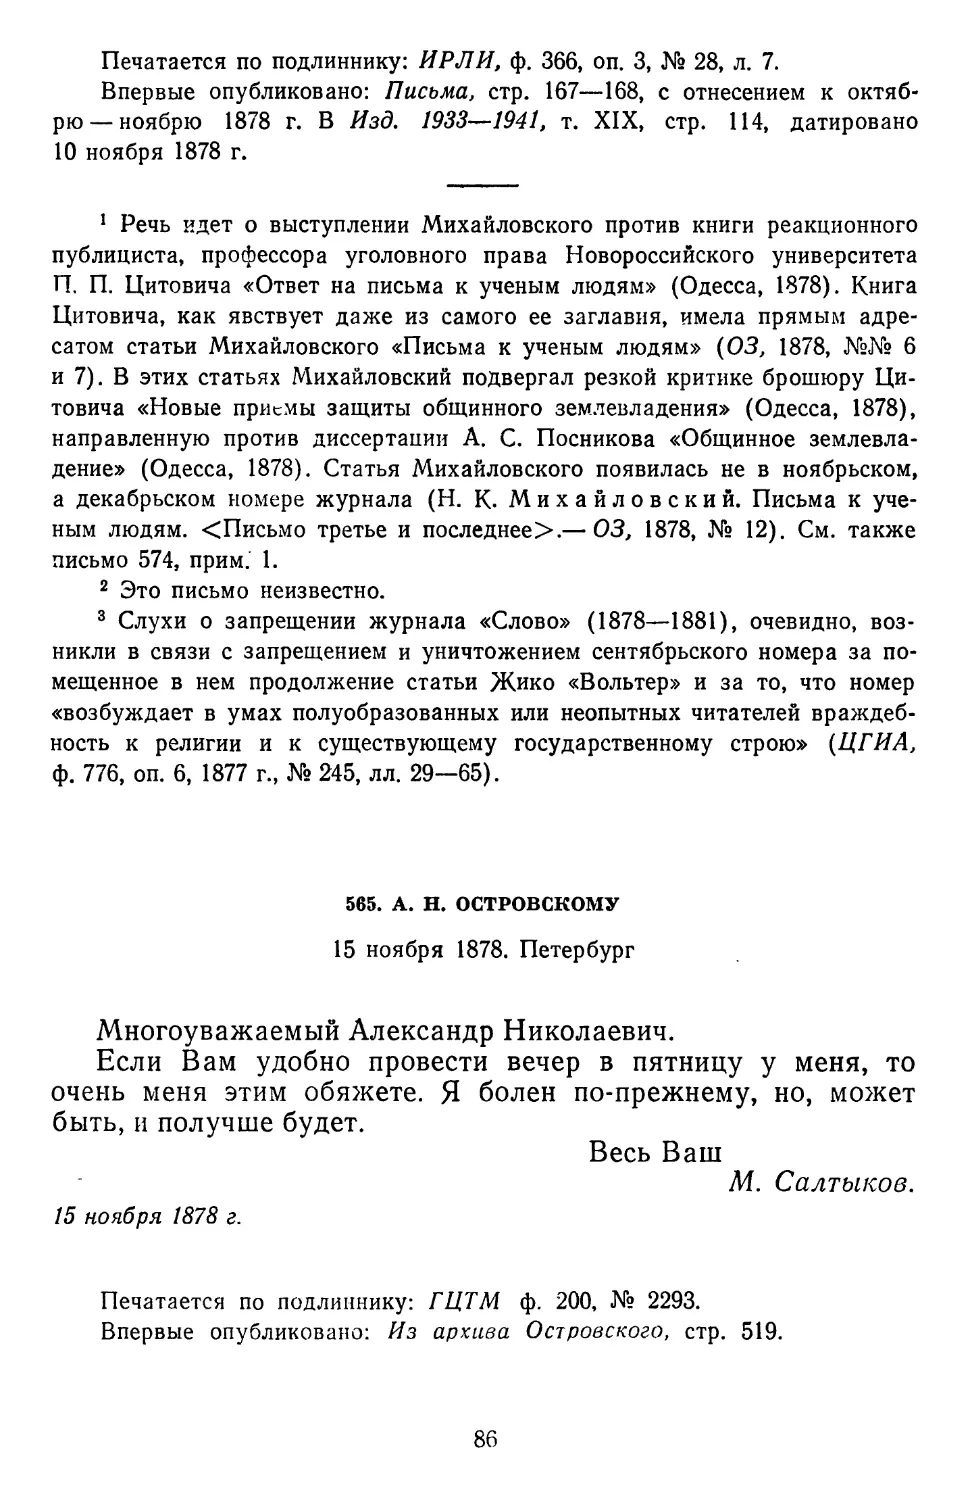 565.А. Н. Островскому. 15 ноября 1878. Петербург